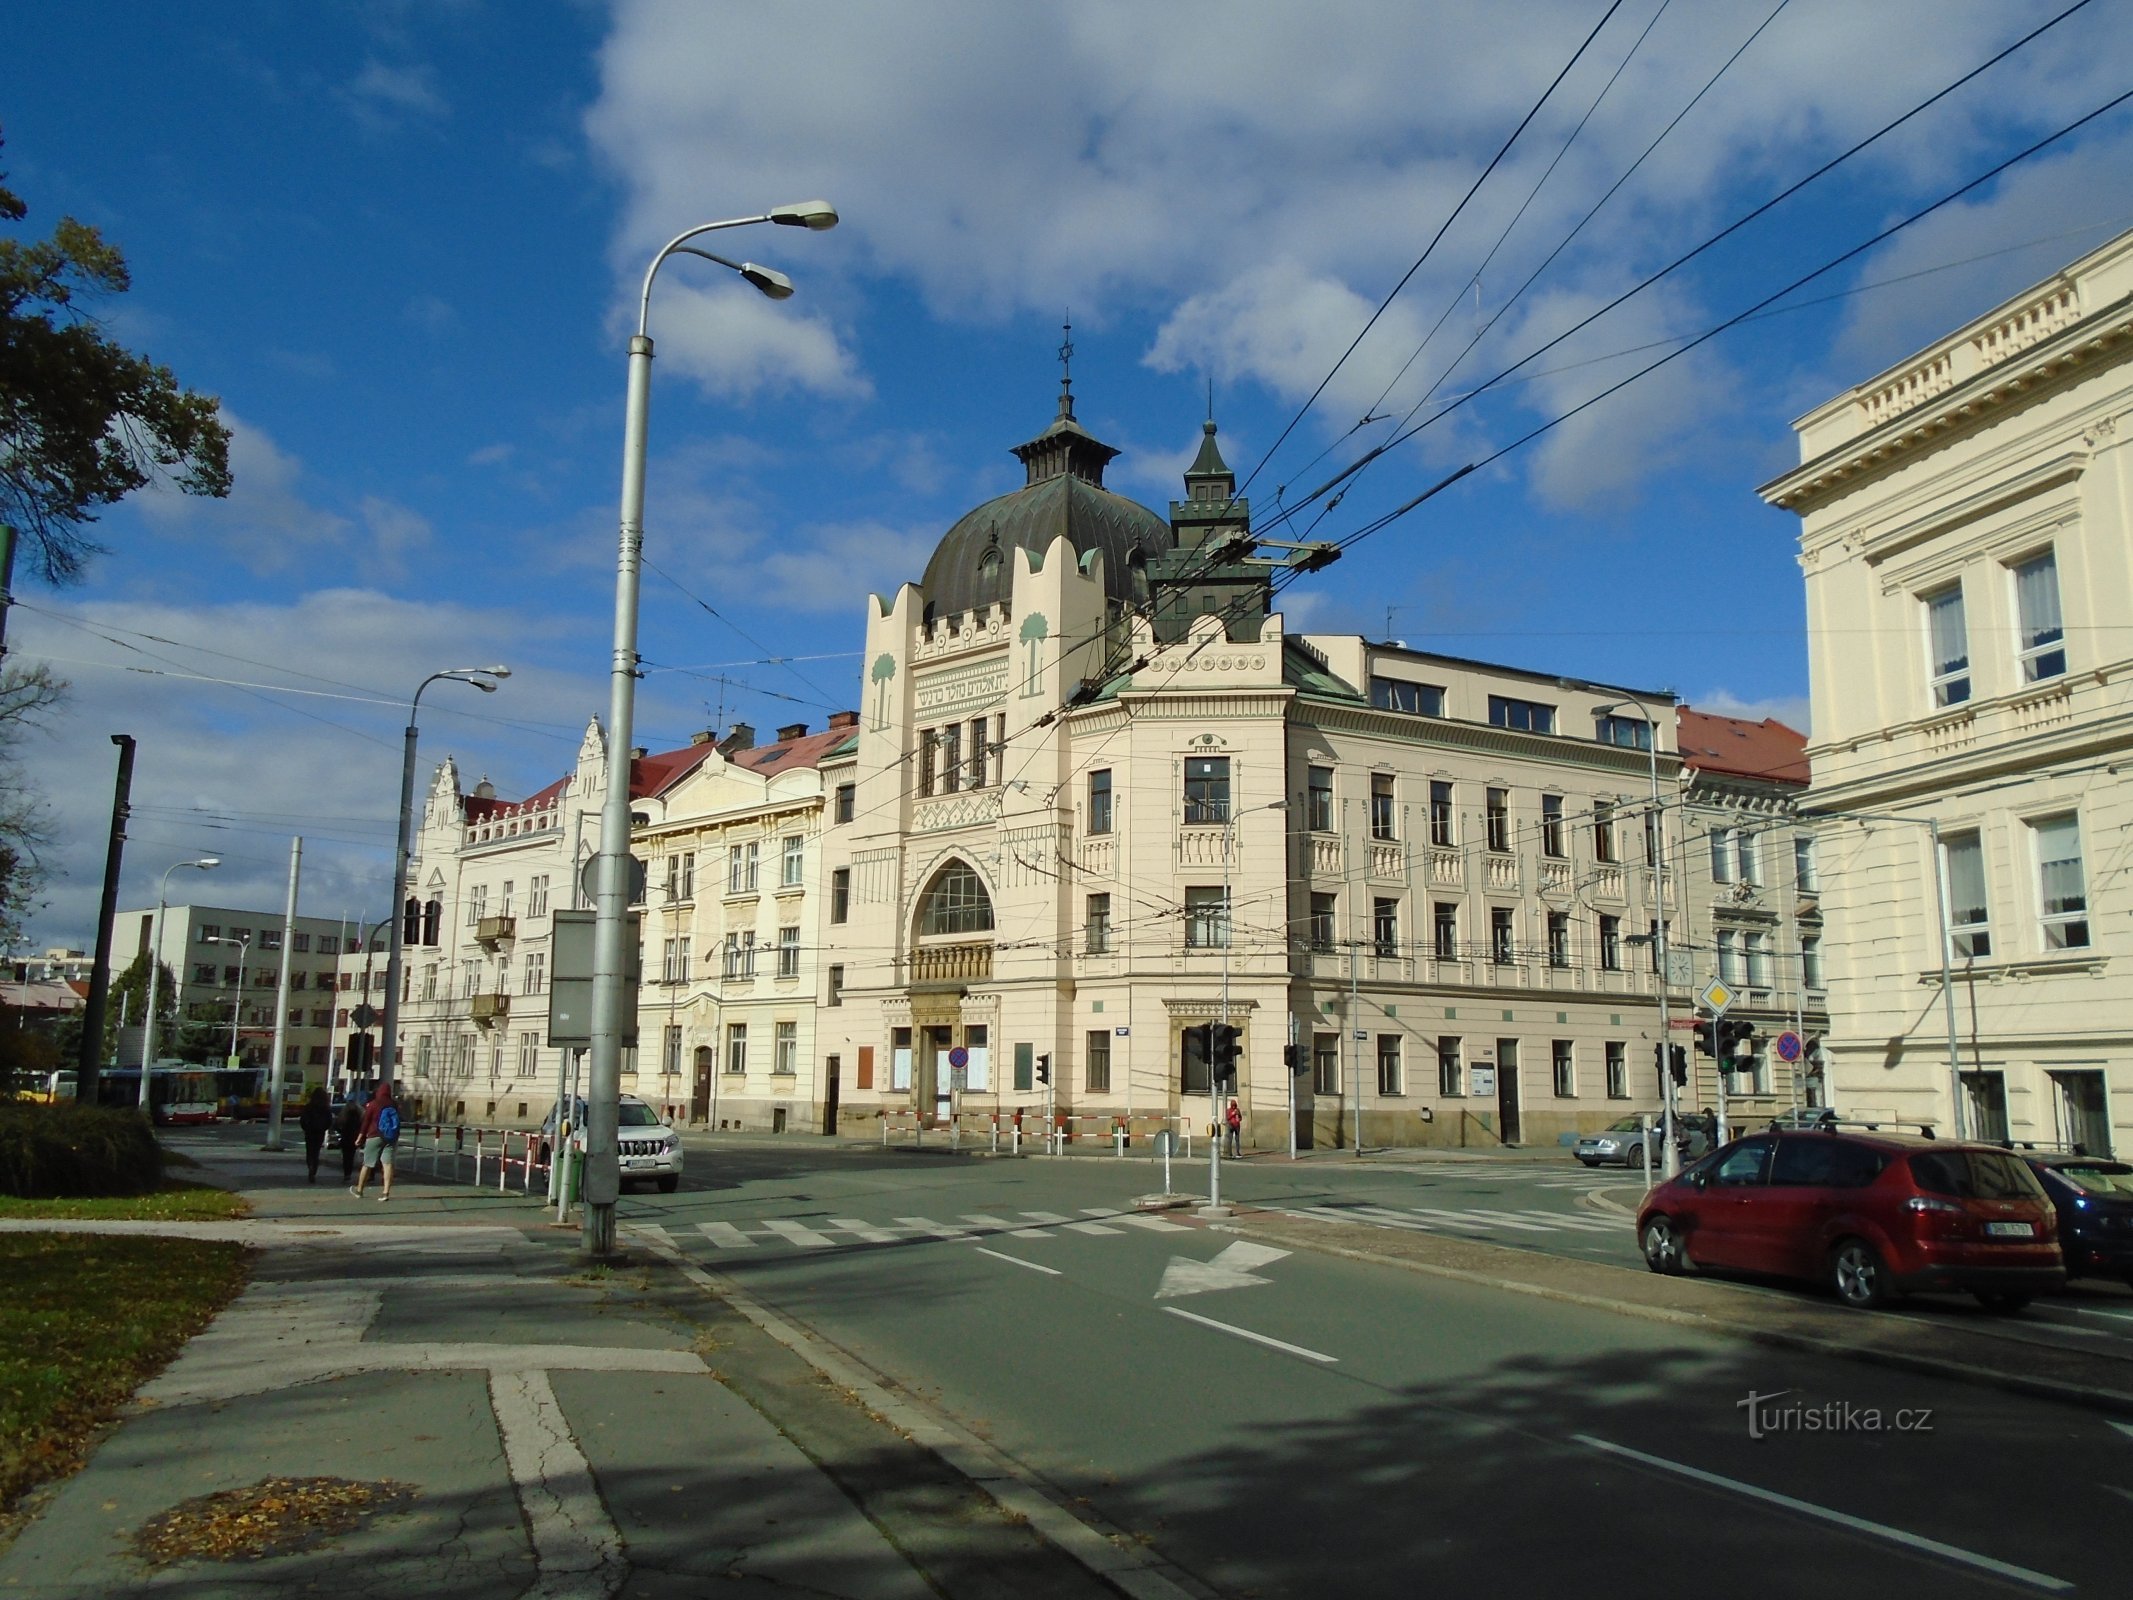 Πρώην συναγωγή (Hradec Králové)